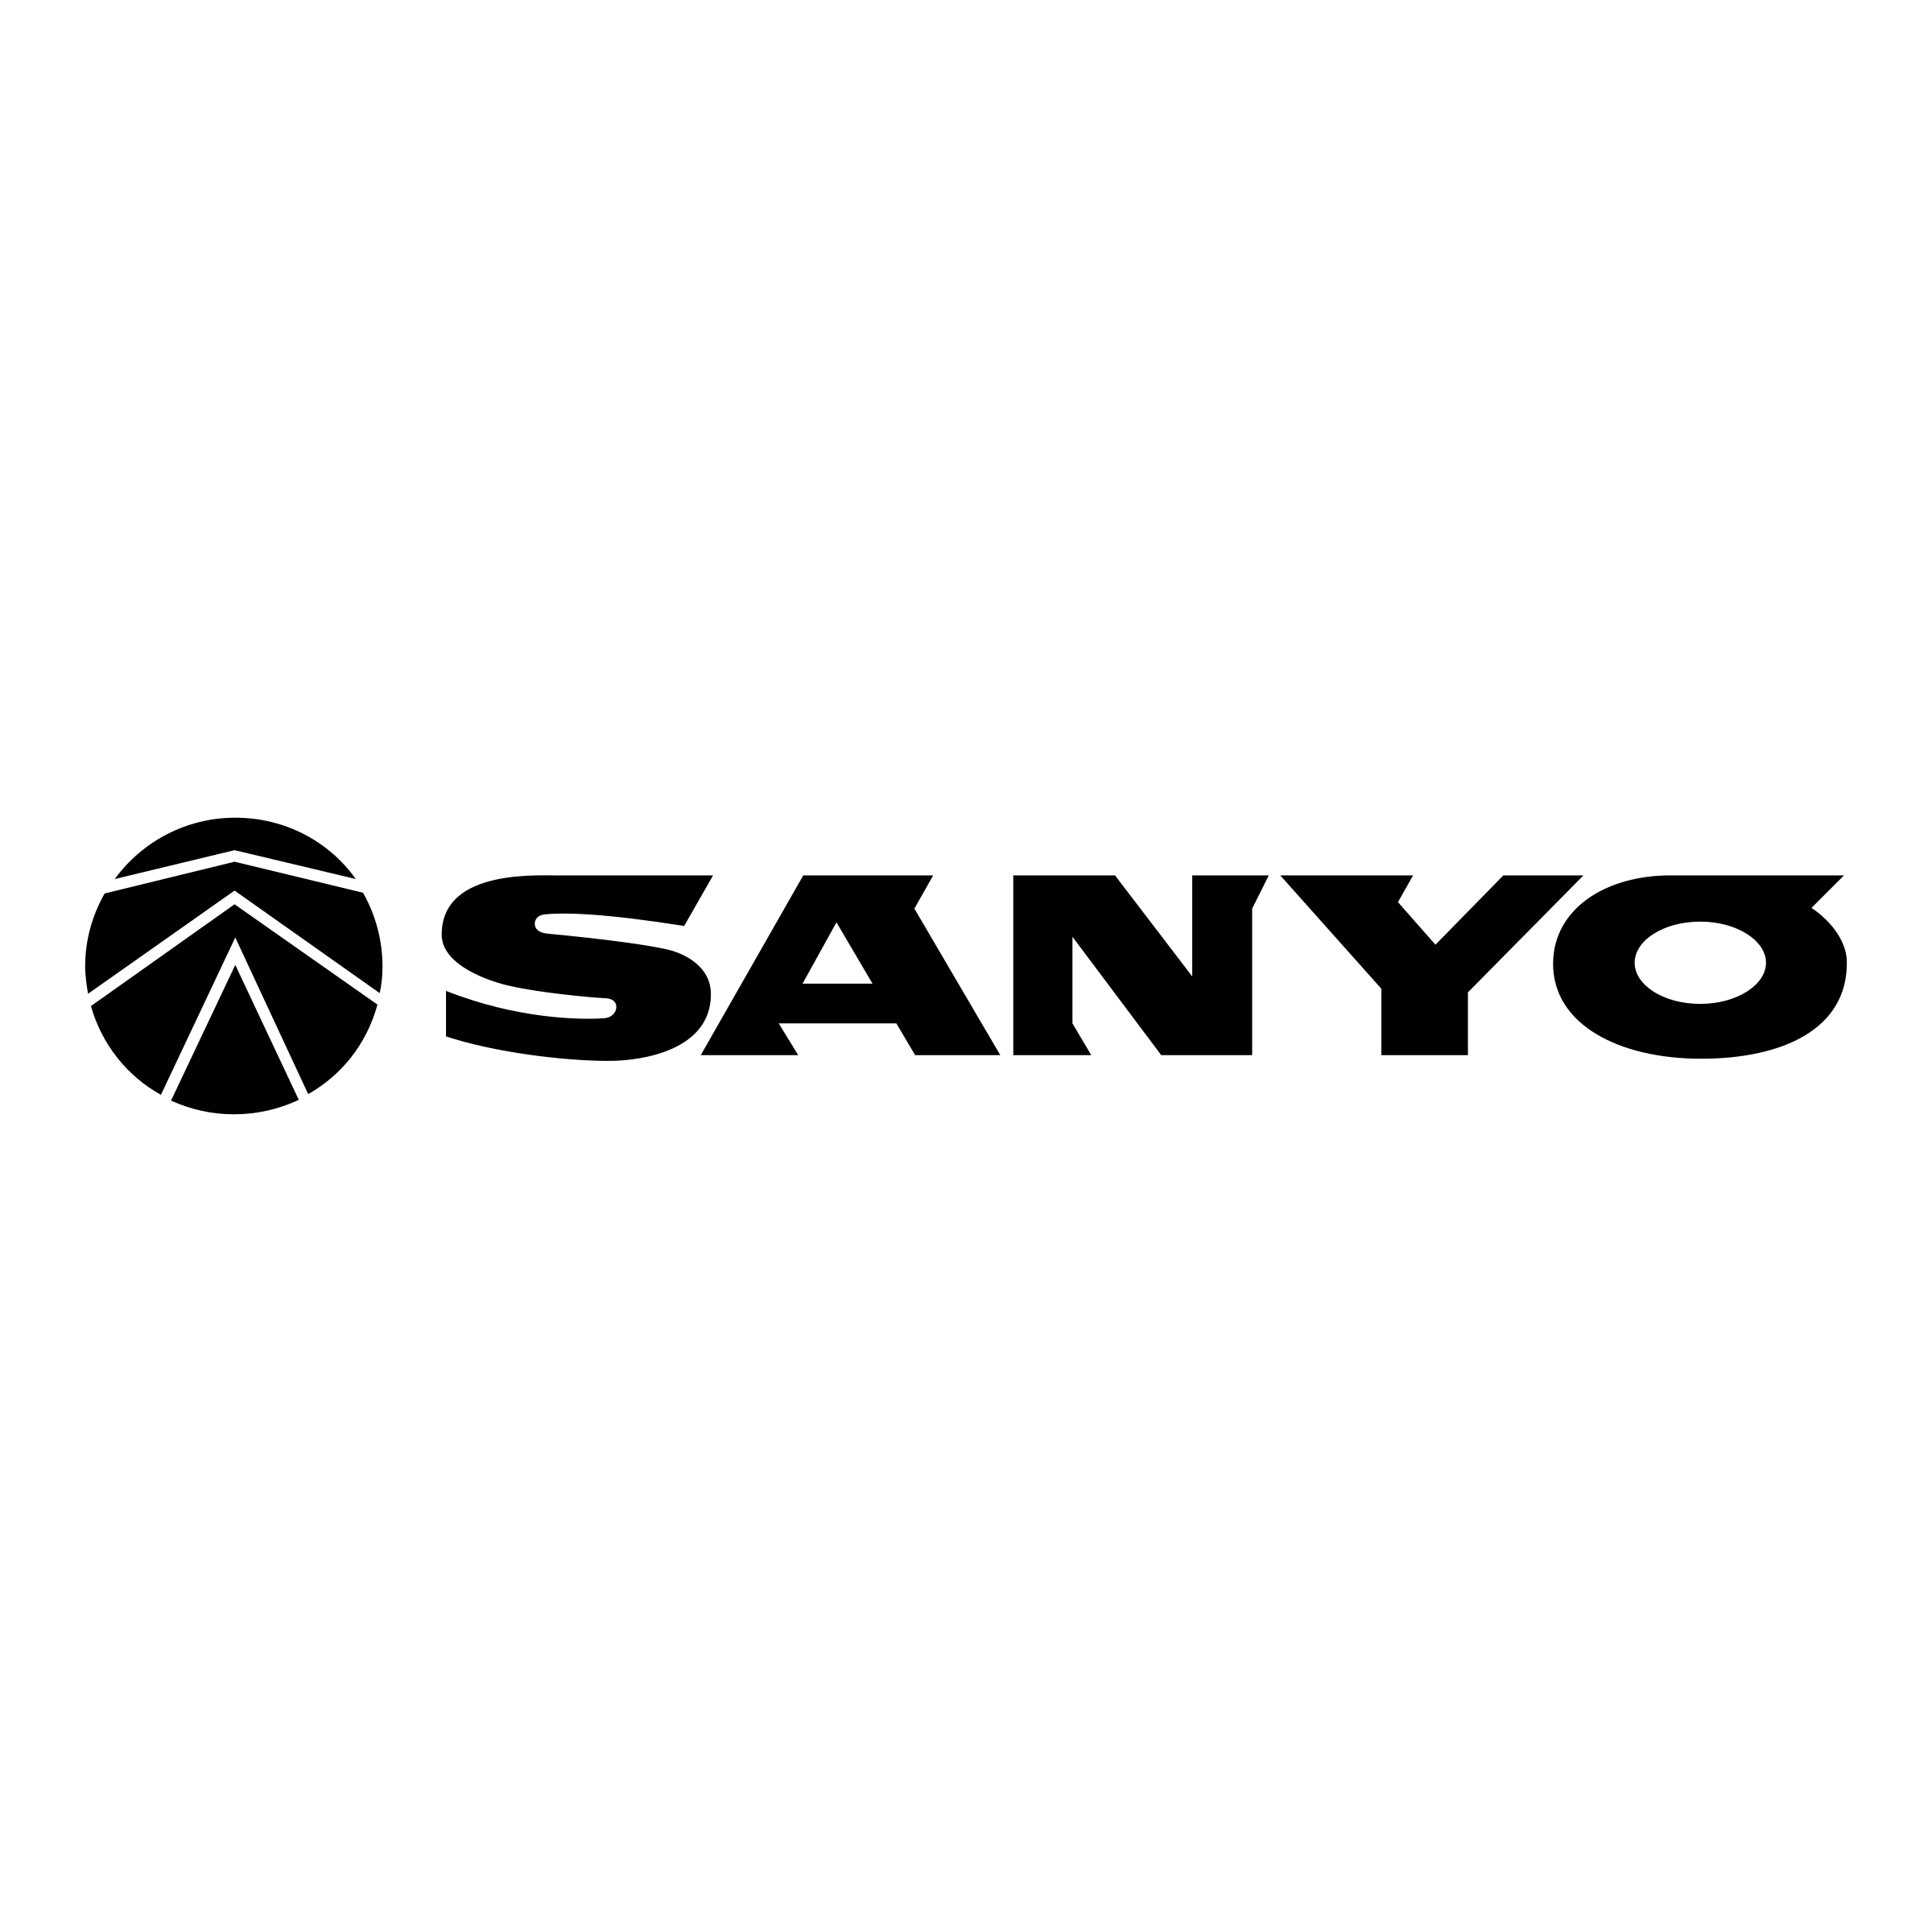 Sanyo Logo - Sanyo Logo PNG Transparent & SVG Vector